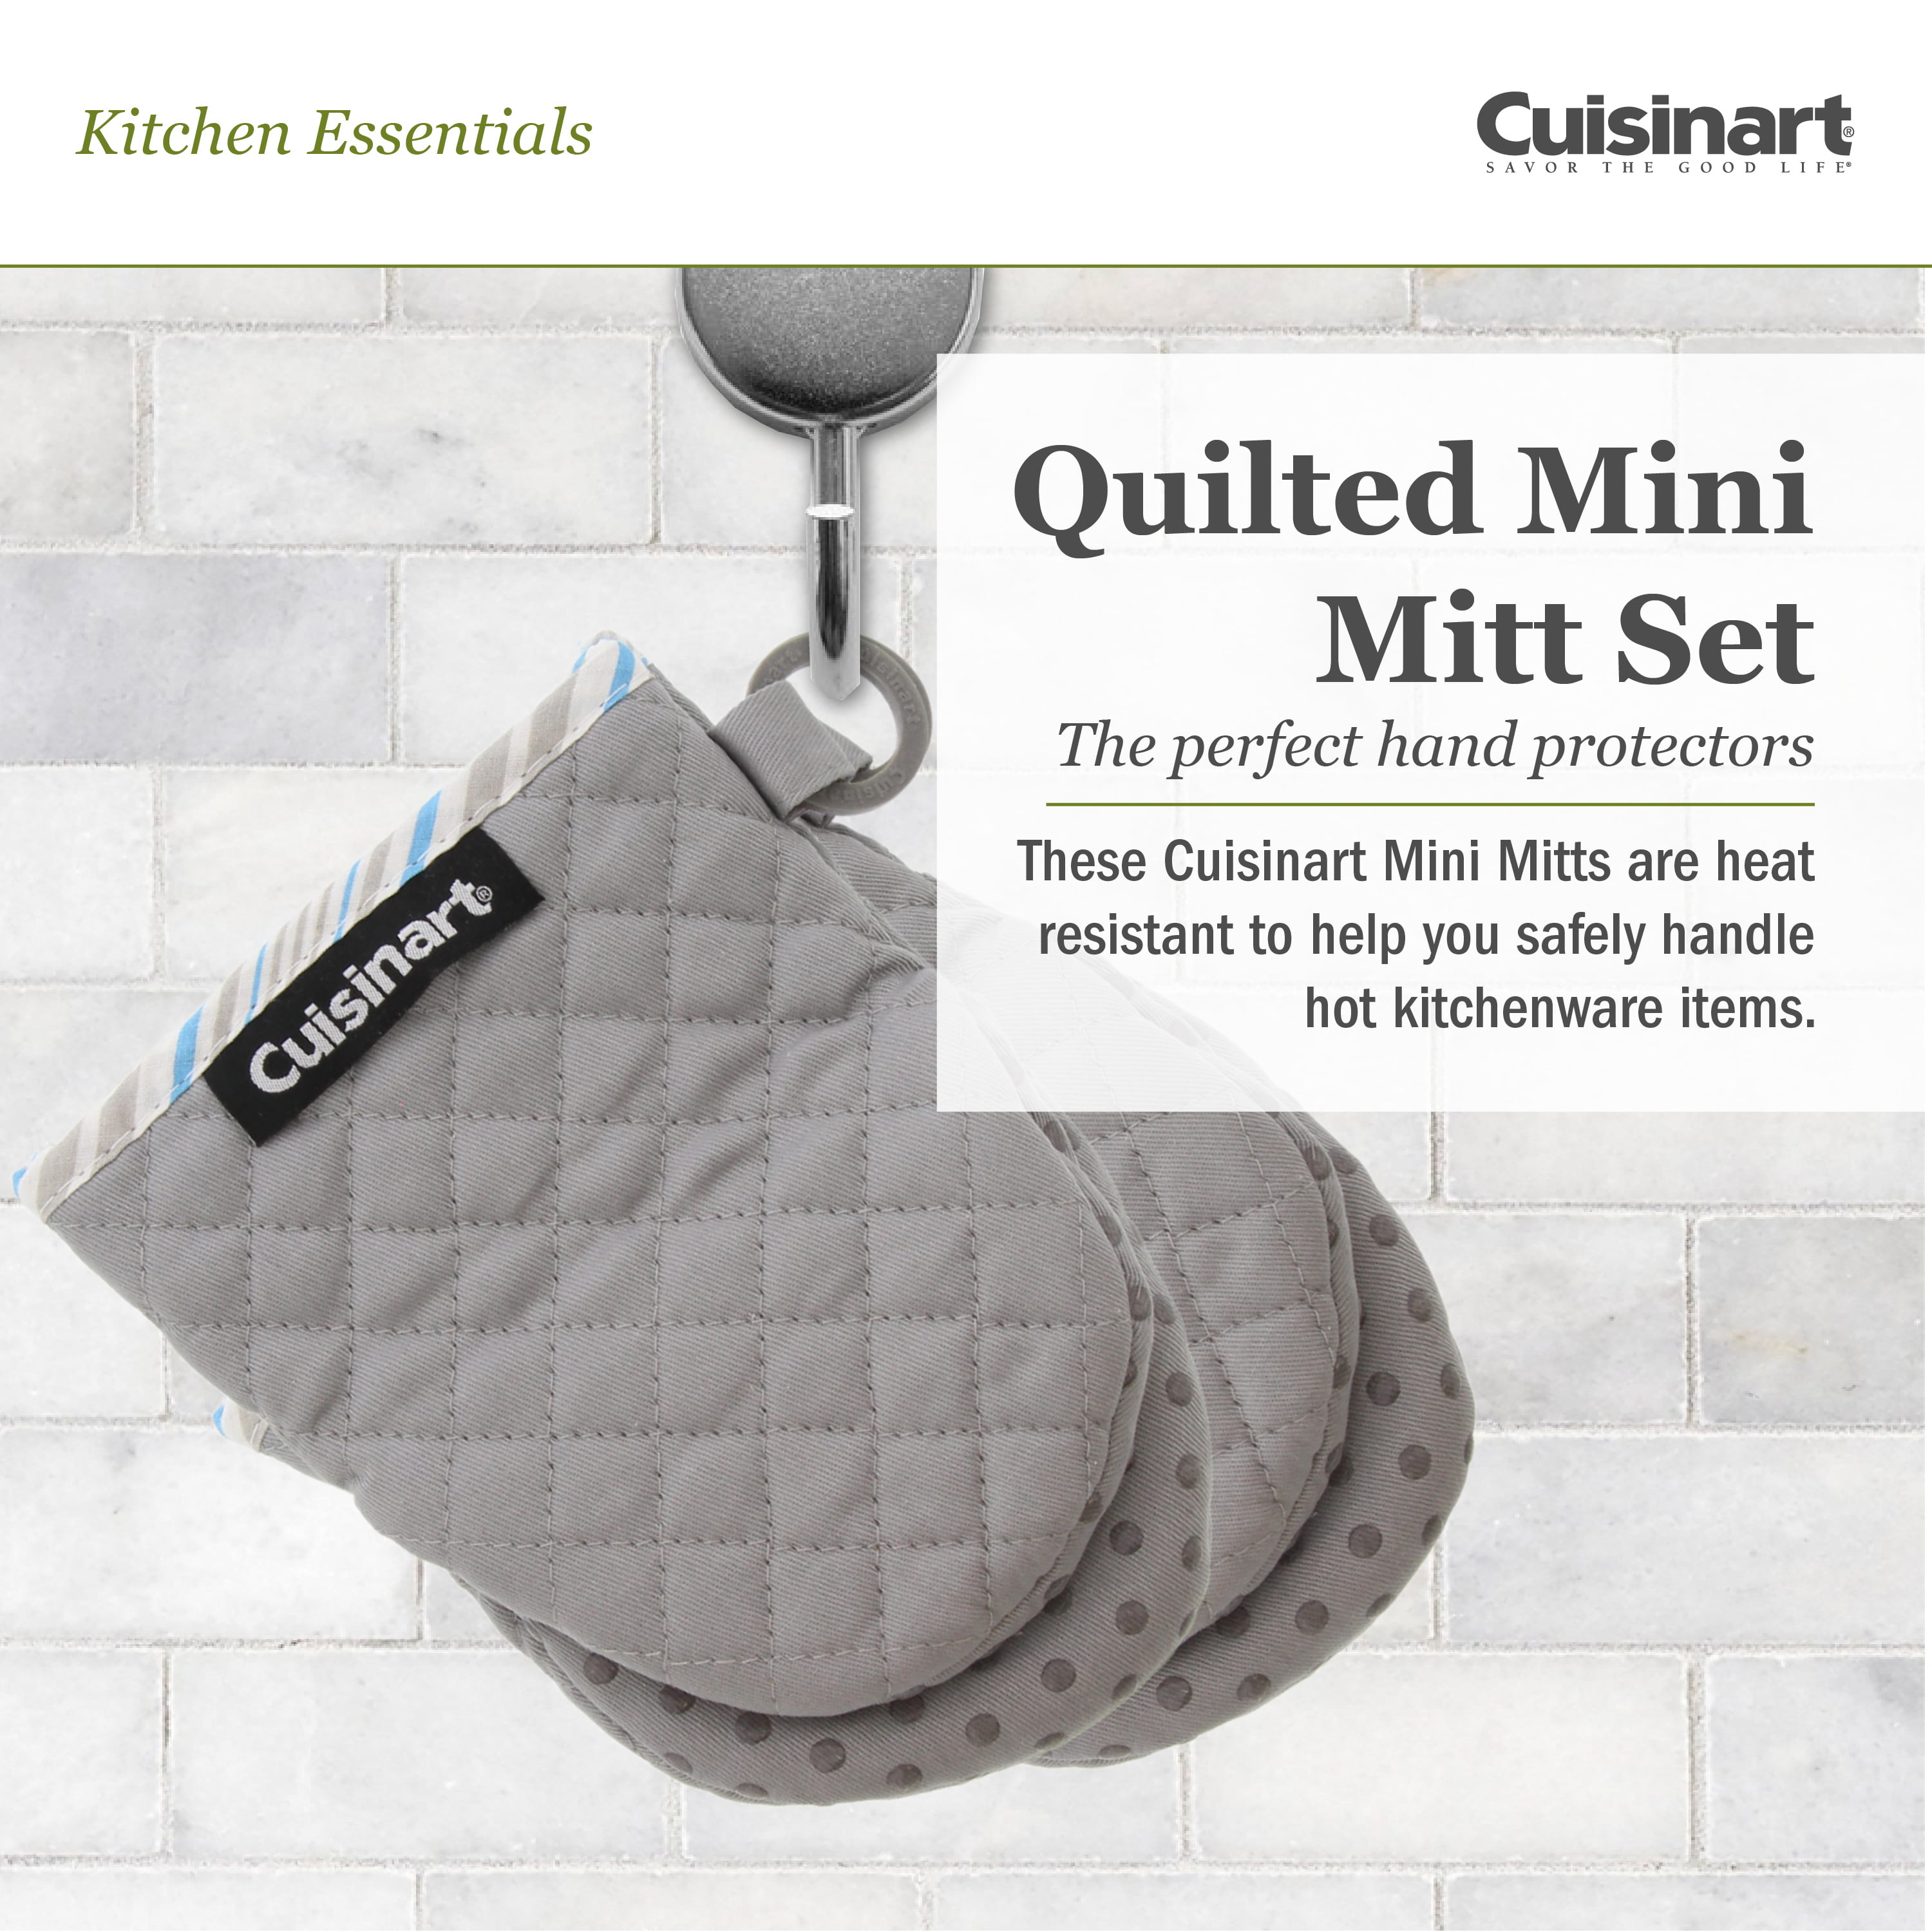 Cuisinart - High-Rise Gray & White Dot & Dash Pattern Mini Oven Mitt, 2-Pack